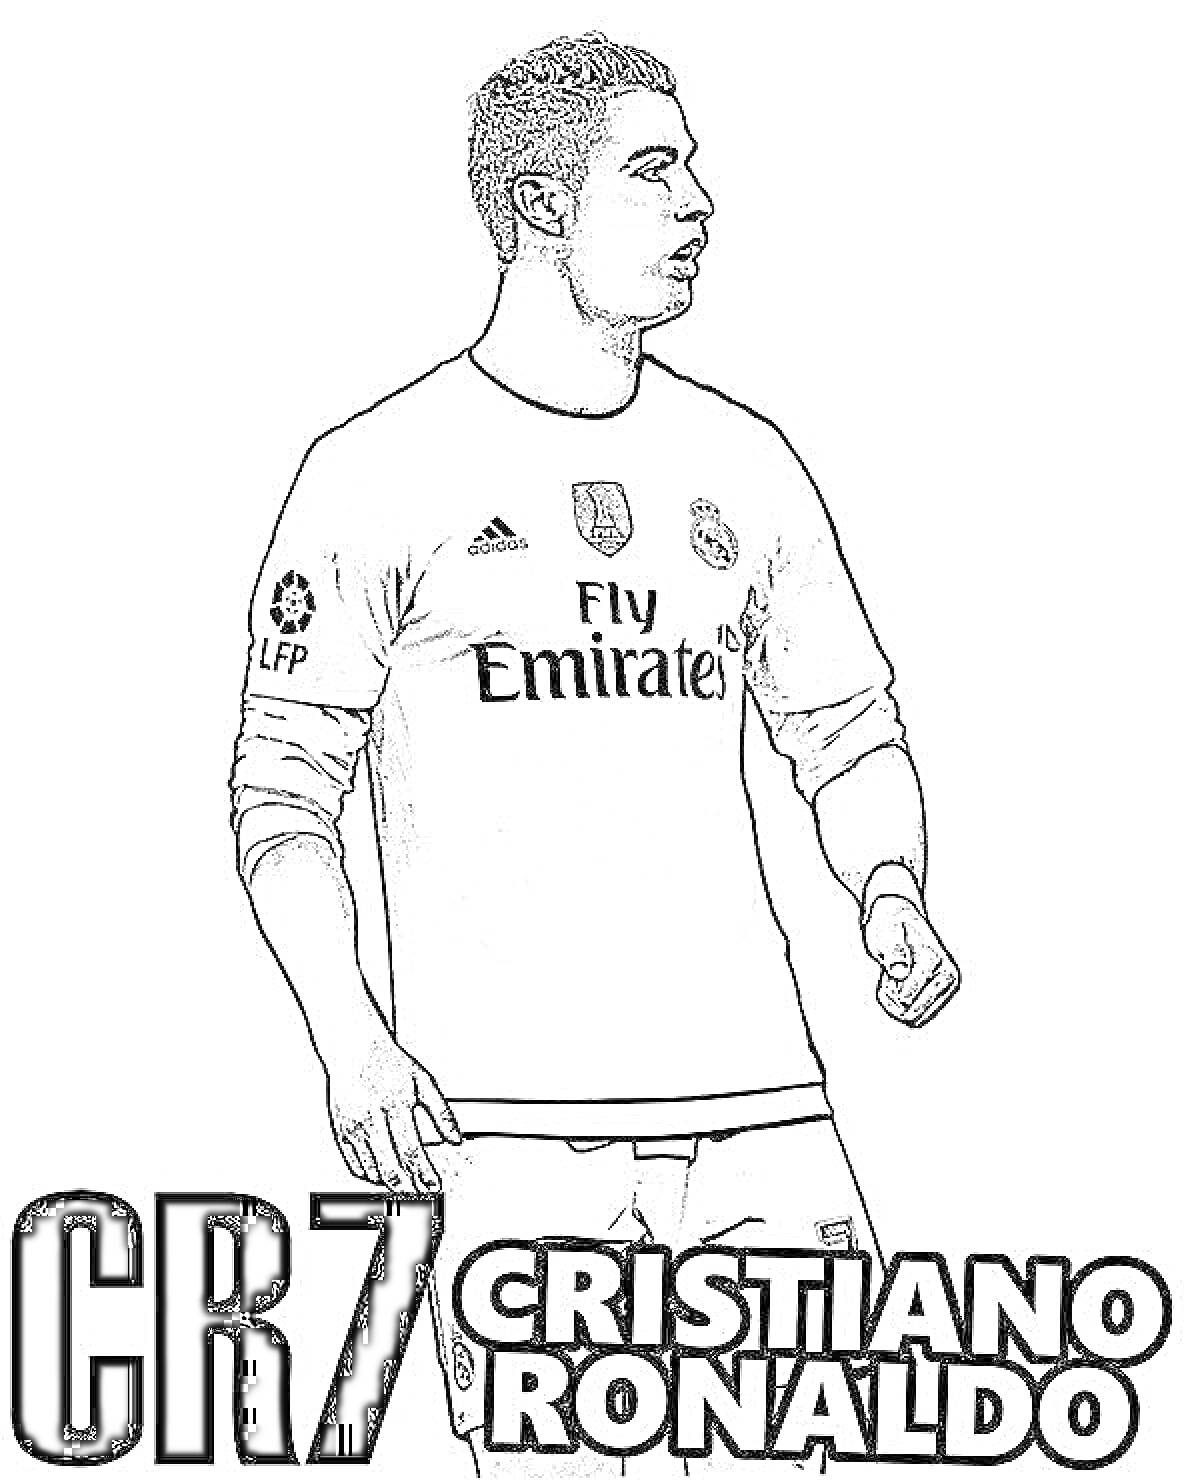 Раскраска Криштиану Роналду в игровой форме с надписями CR7 и Cristiano Ronaldo